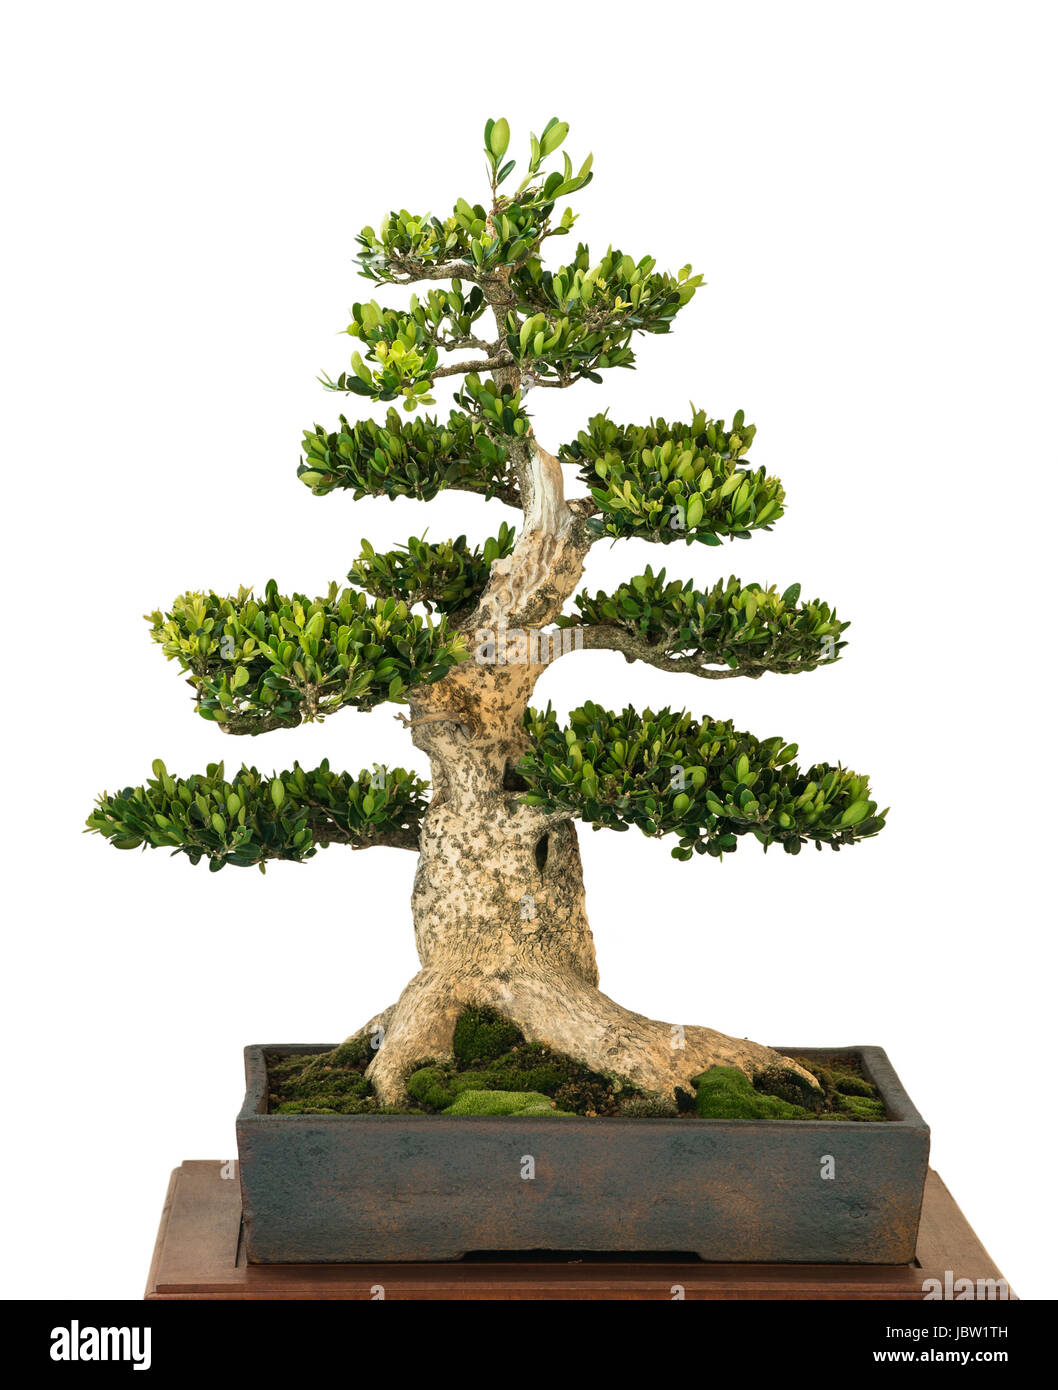 Buchsbaum (Buxus sempervivum) als Bonsai Baum Stock Photo